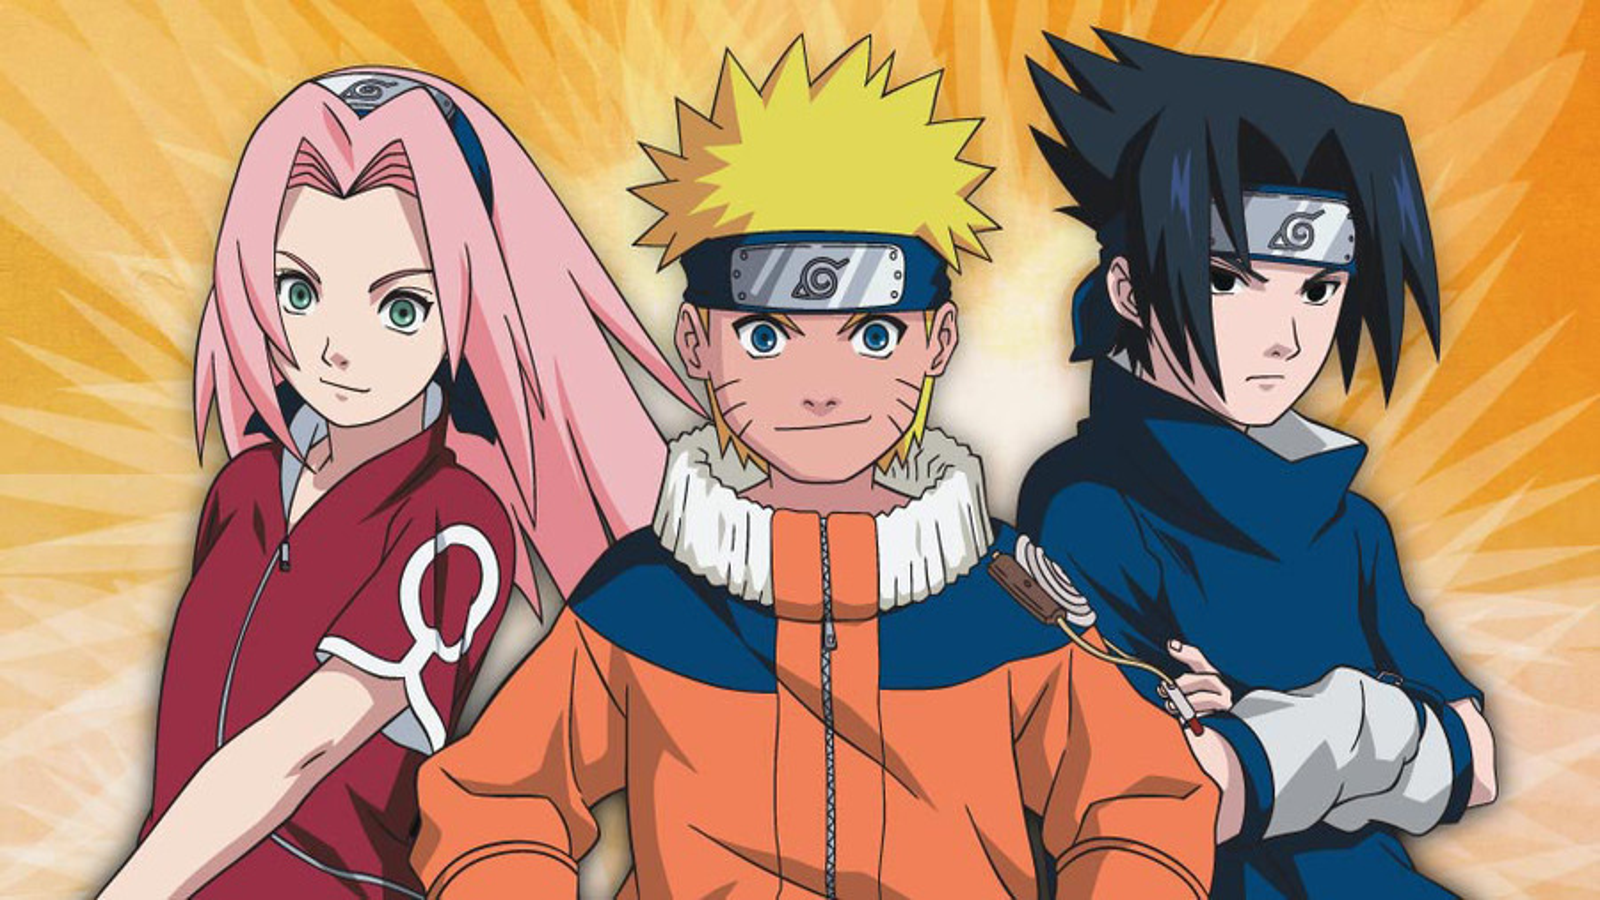 Naruto Clássico Todos os Episódios - Anime HD - Animes Online Gratis!